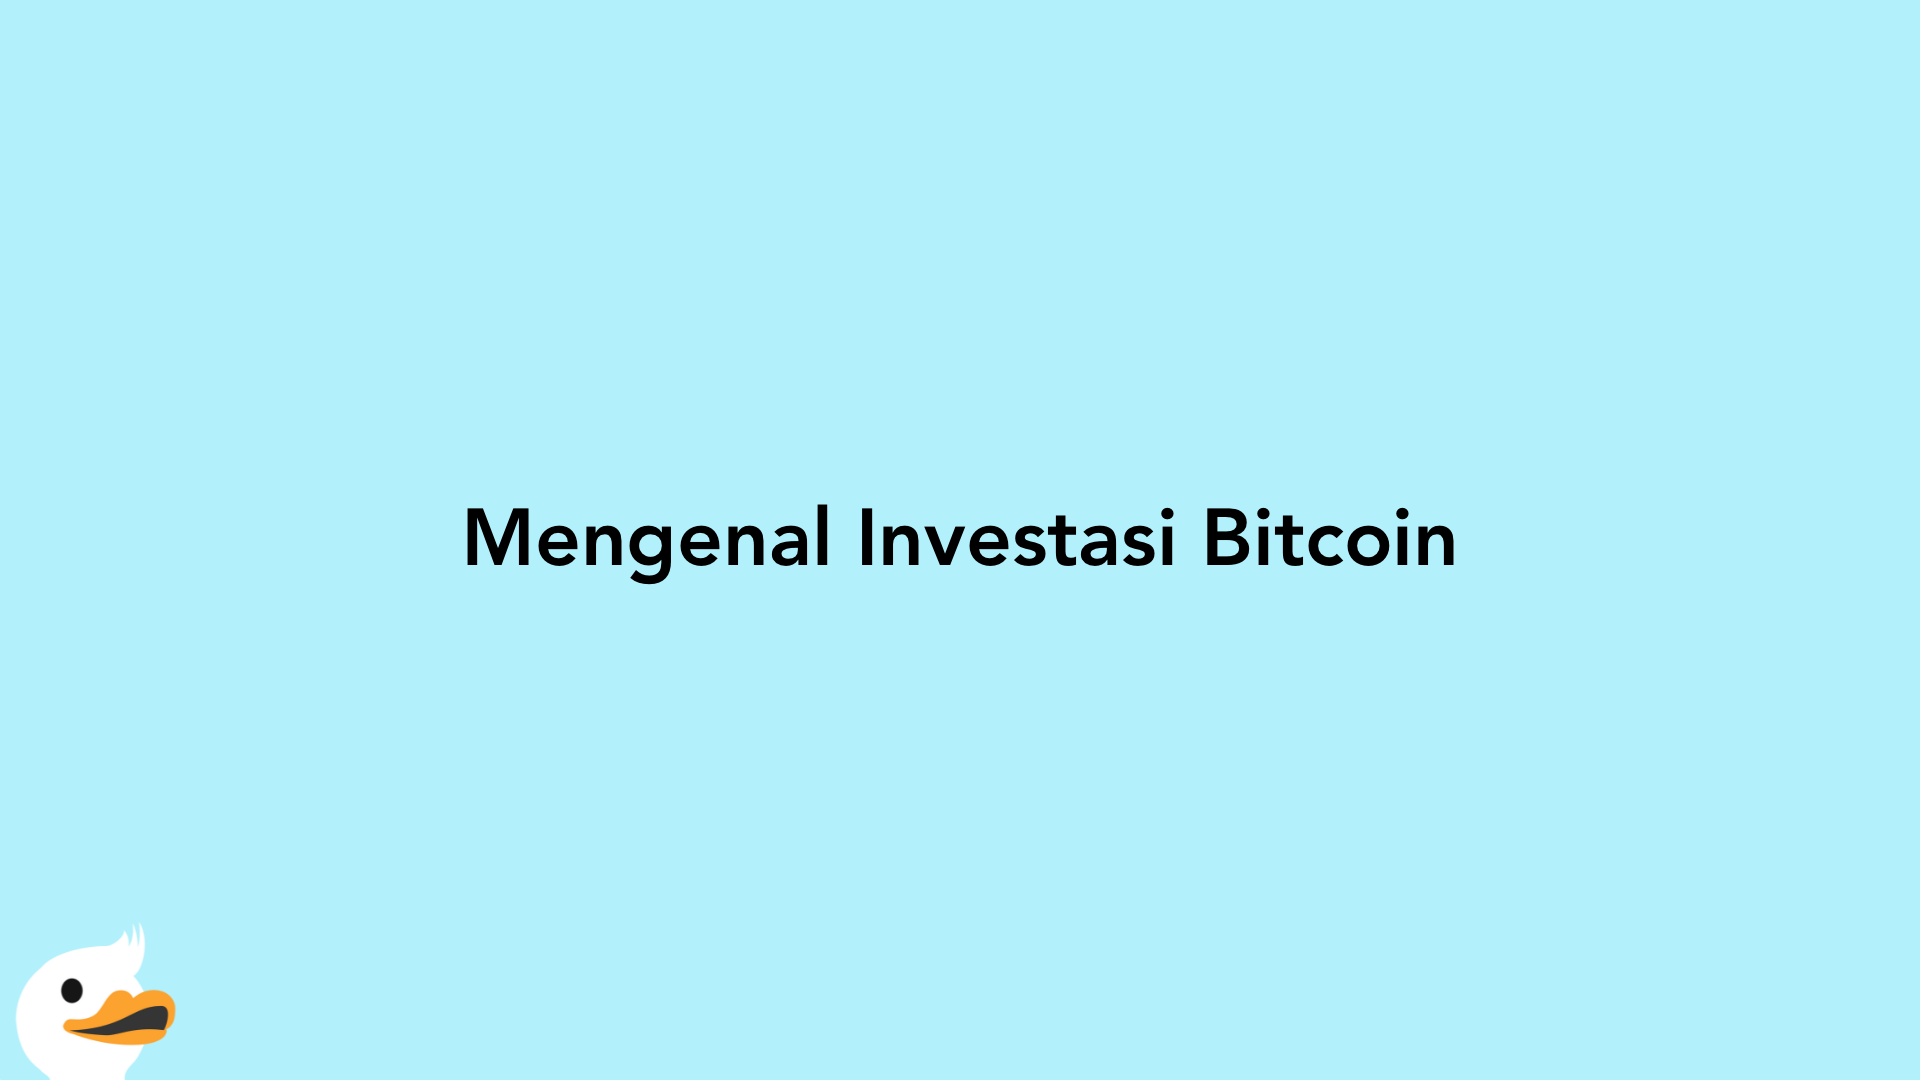 Mengenal Investasi Bitcoin